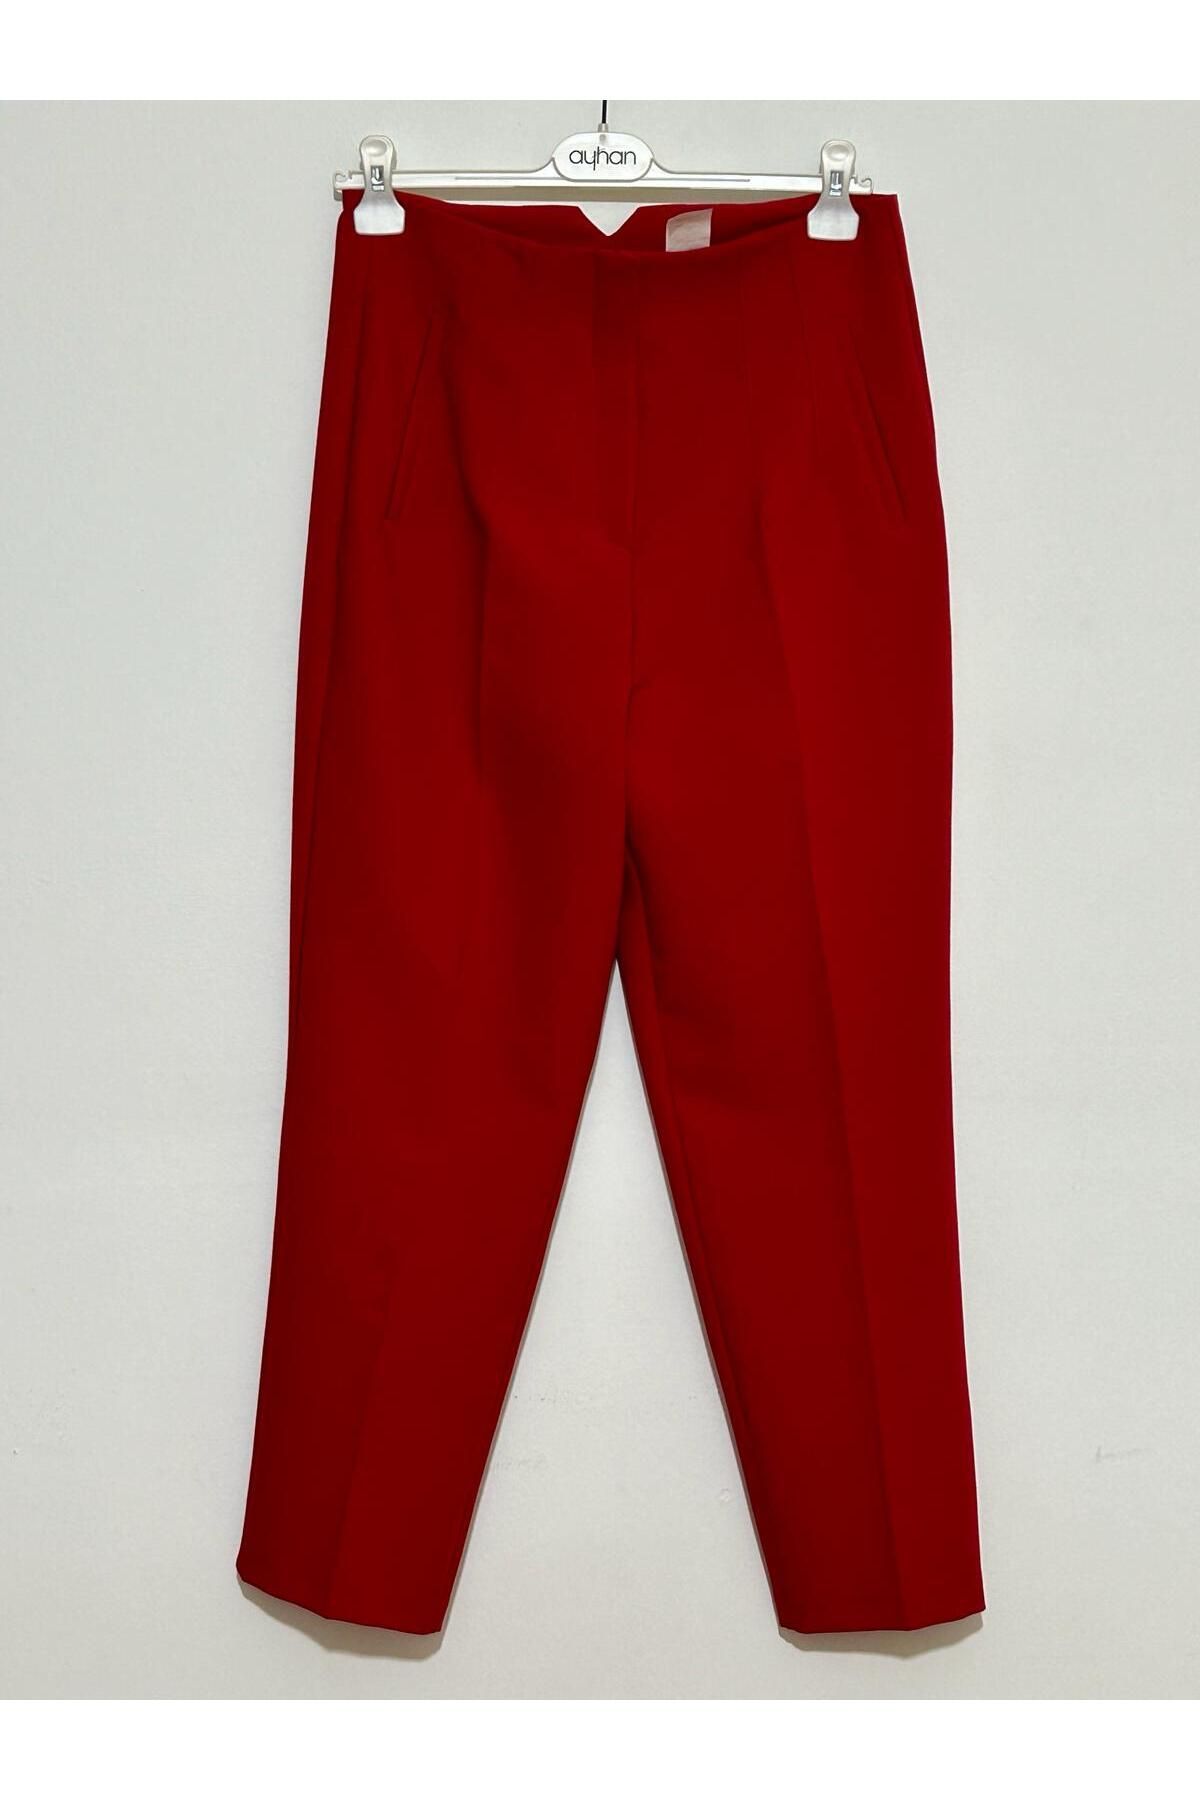 Ayhan Kırmızı Pantolon